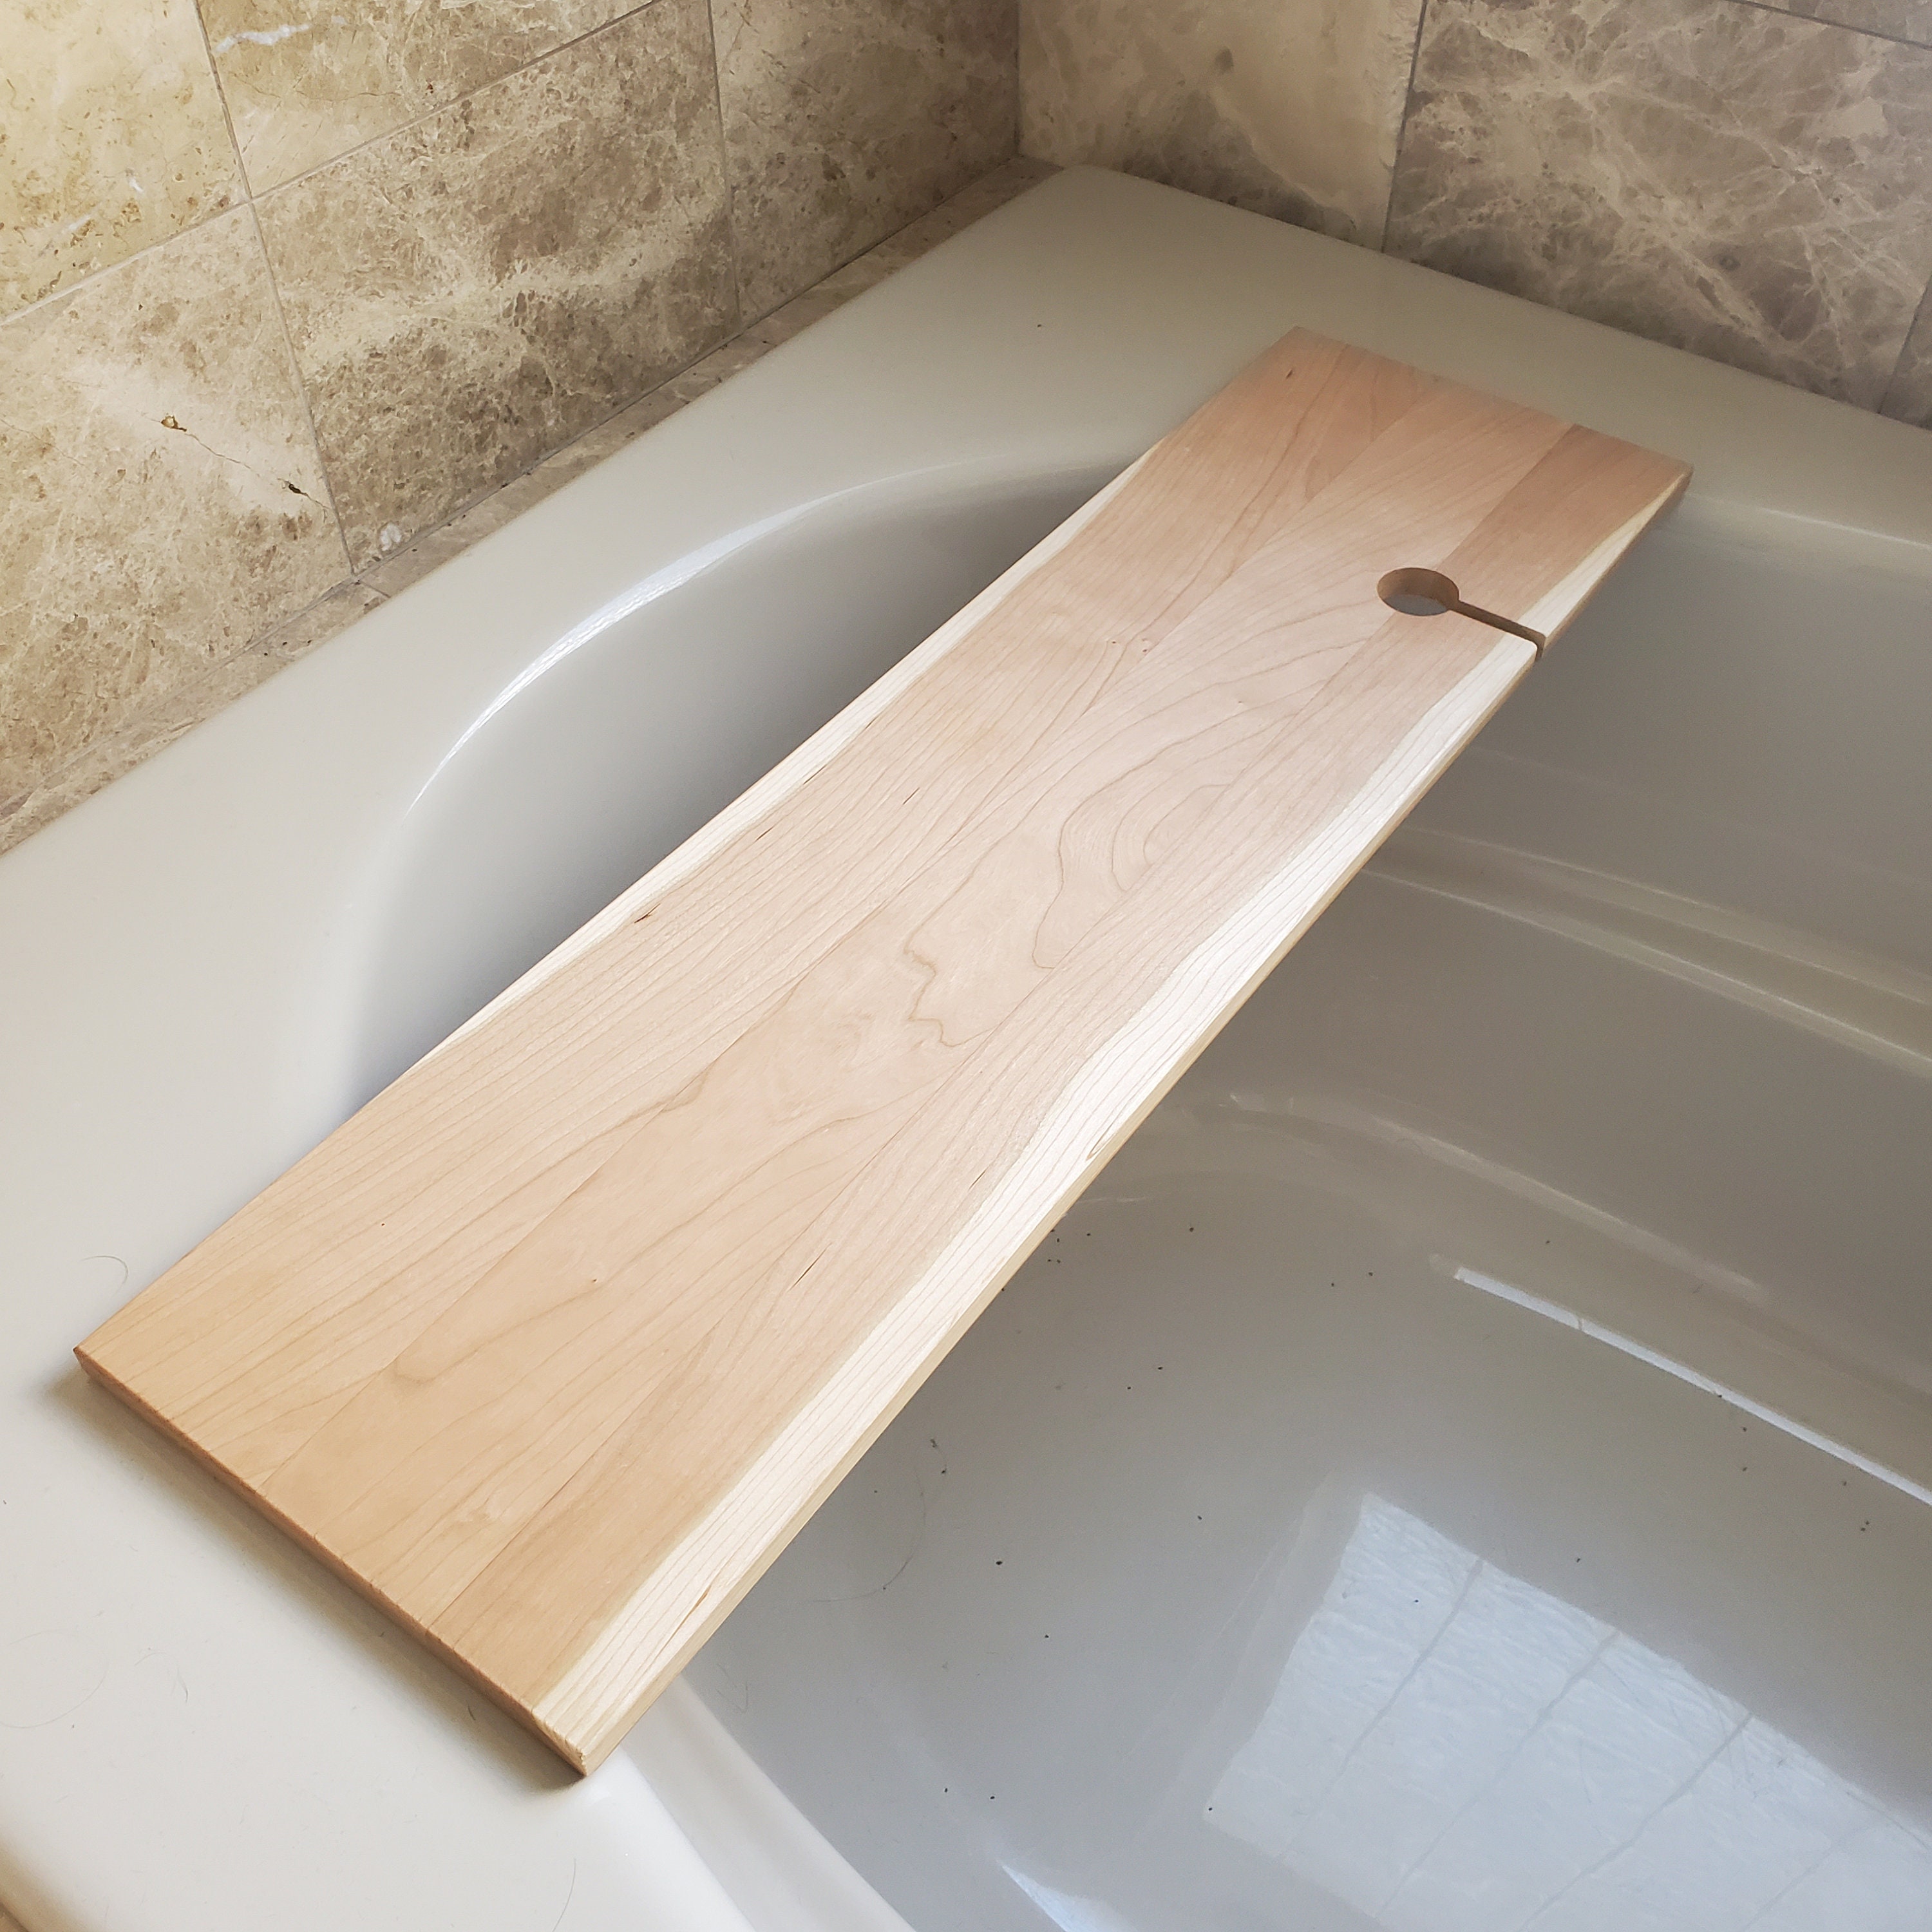 Handmade Bath Tray. Bath Caddy. Spa. Live Edge Cherry Bath Tub Tray.  Bathroom Decor. Bathroom Shelve. Wood Bathtub Tray. Rustic 